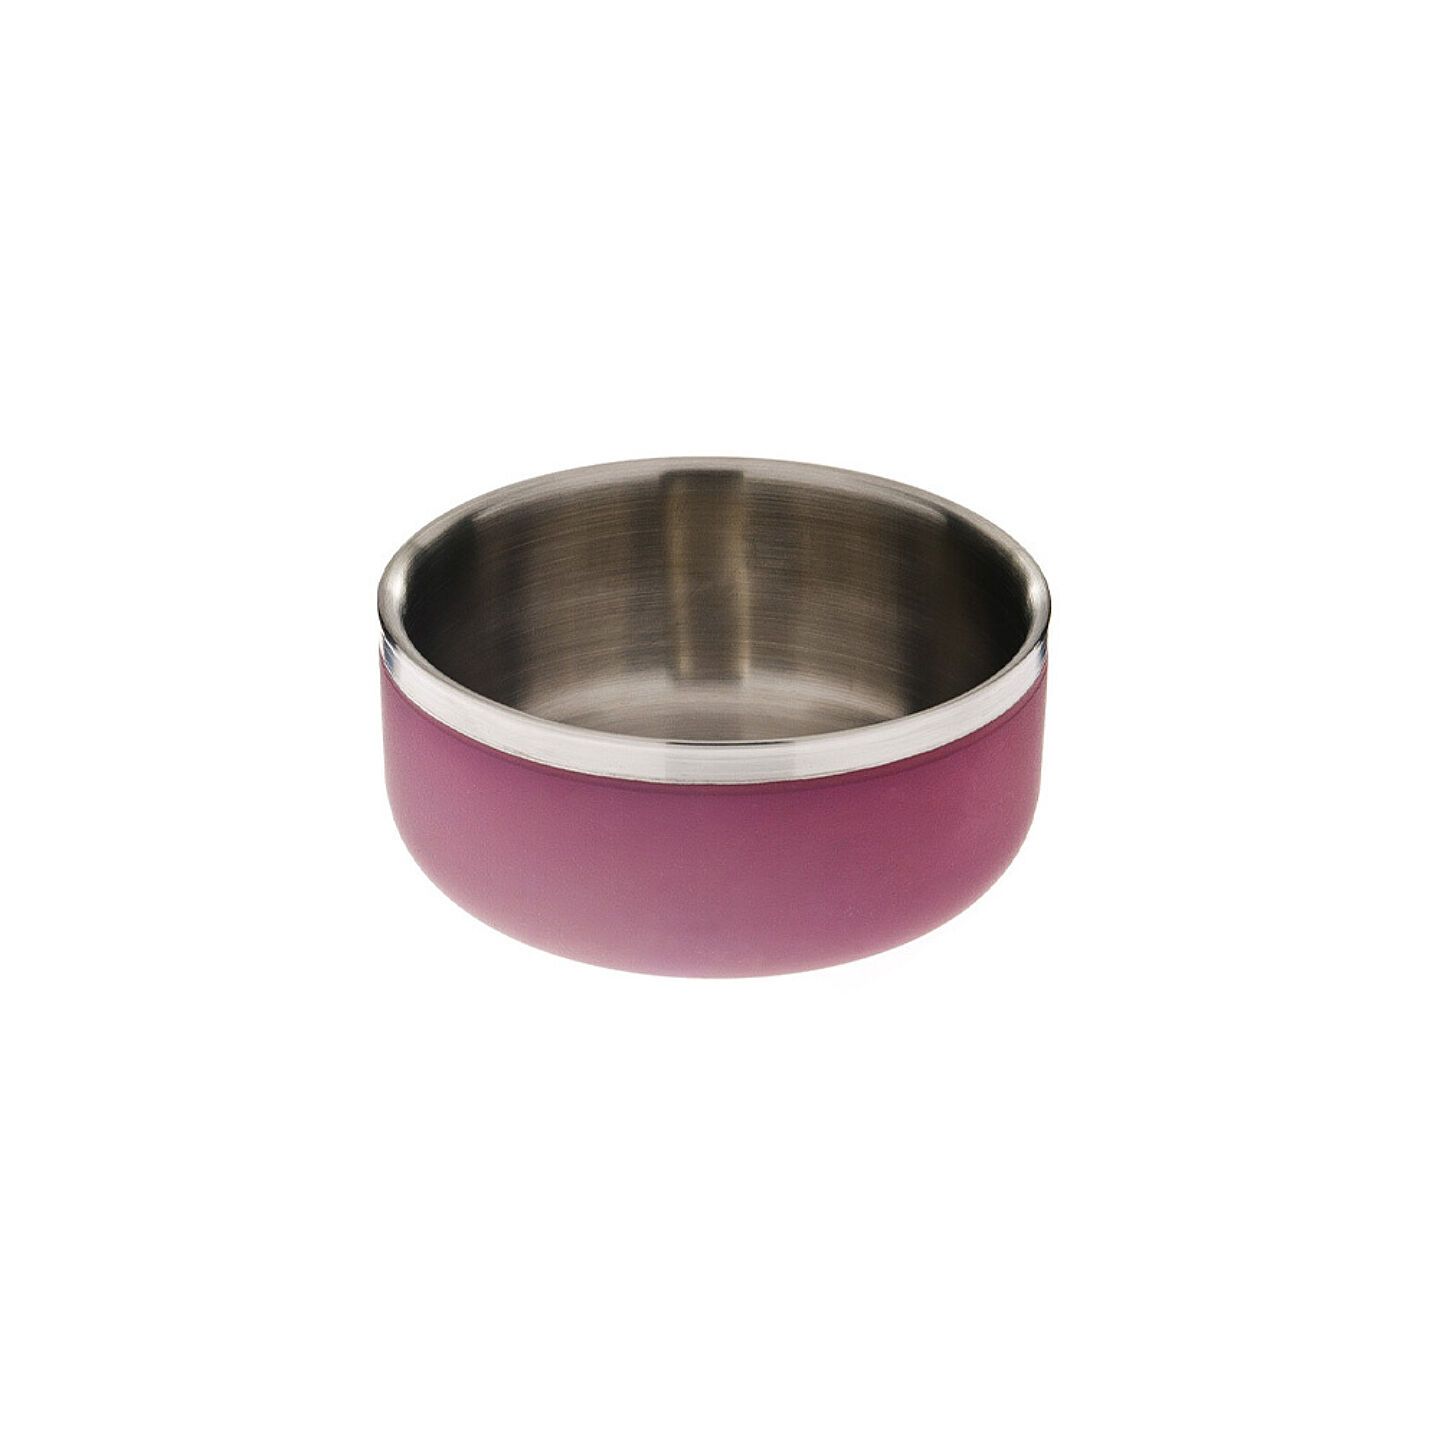 Dubbel bowl ferribiella roze